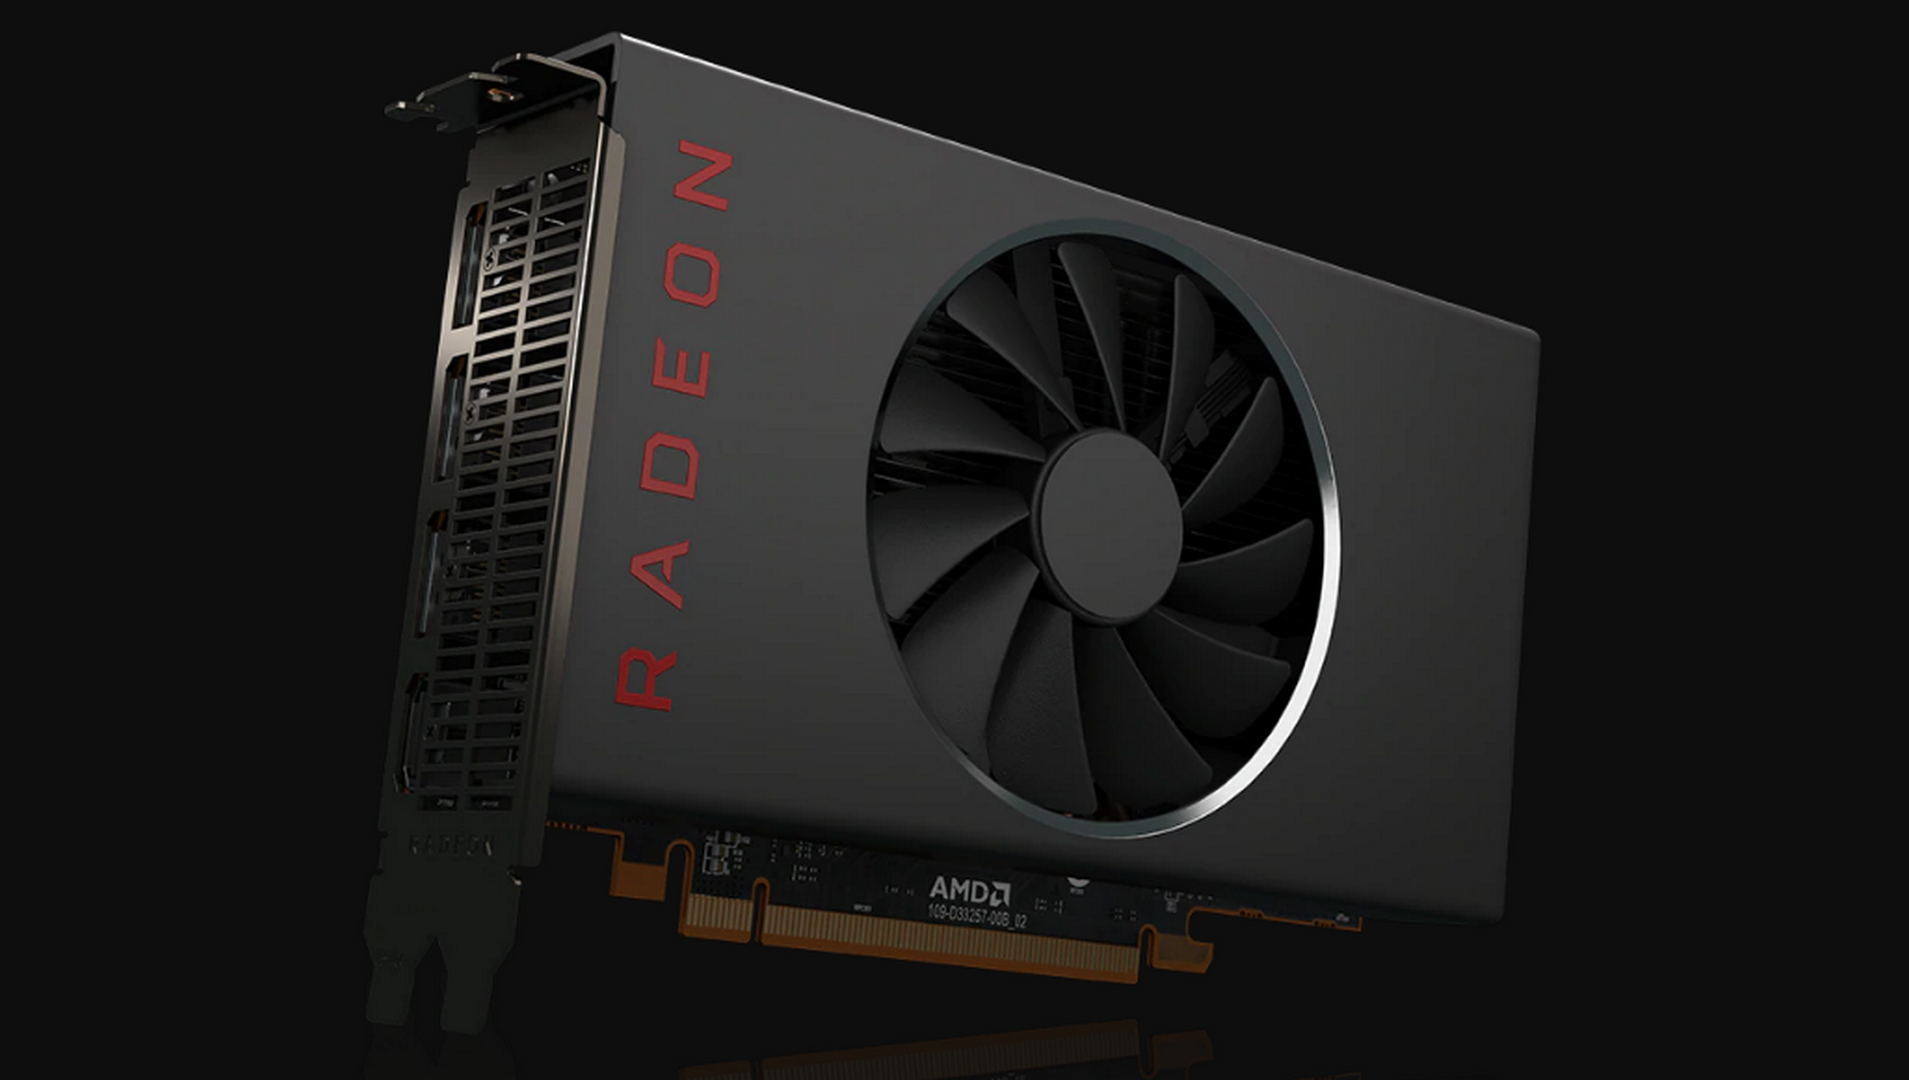 เปิดตัว! กราฟิกการ์ด AMD Radeon RX 5500 XT: ประสิทธิภาพความคมชัดระดับ 1080p  พร้อมด้วยซอฟต์แวร์ฟีเจอร์ที่ทรงพลัง